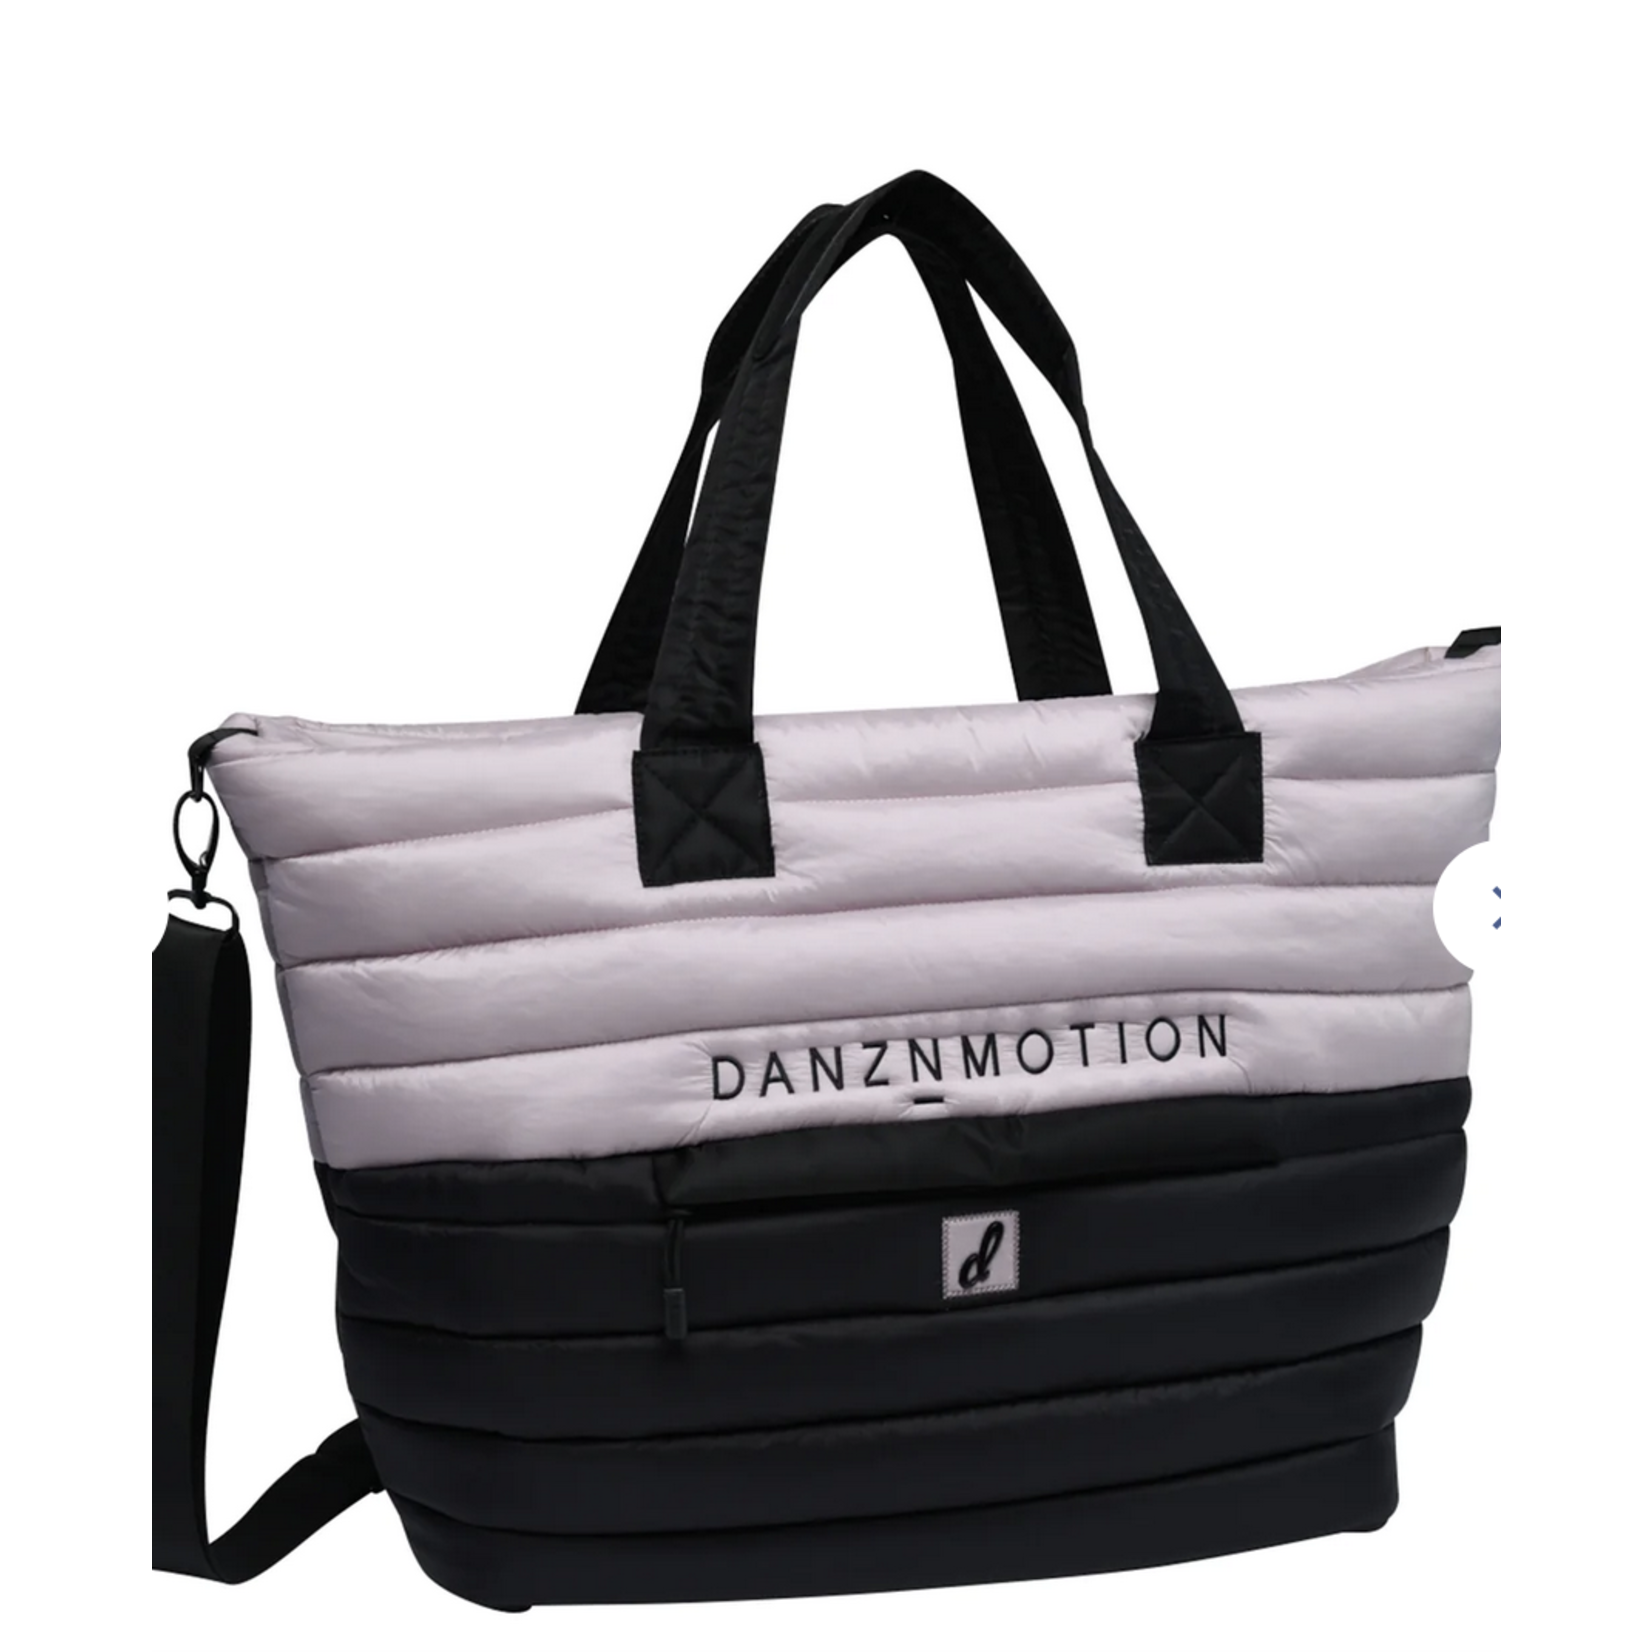 DanzNMotion by Danshuz B23507 Puffer Bag